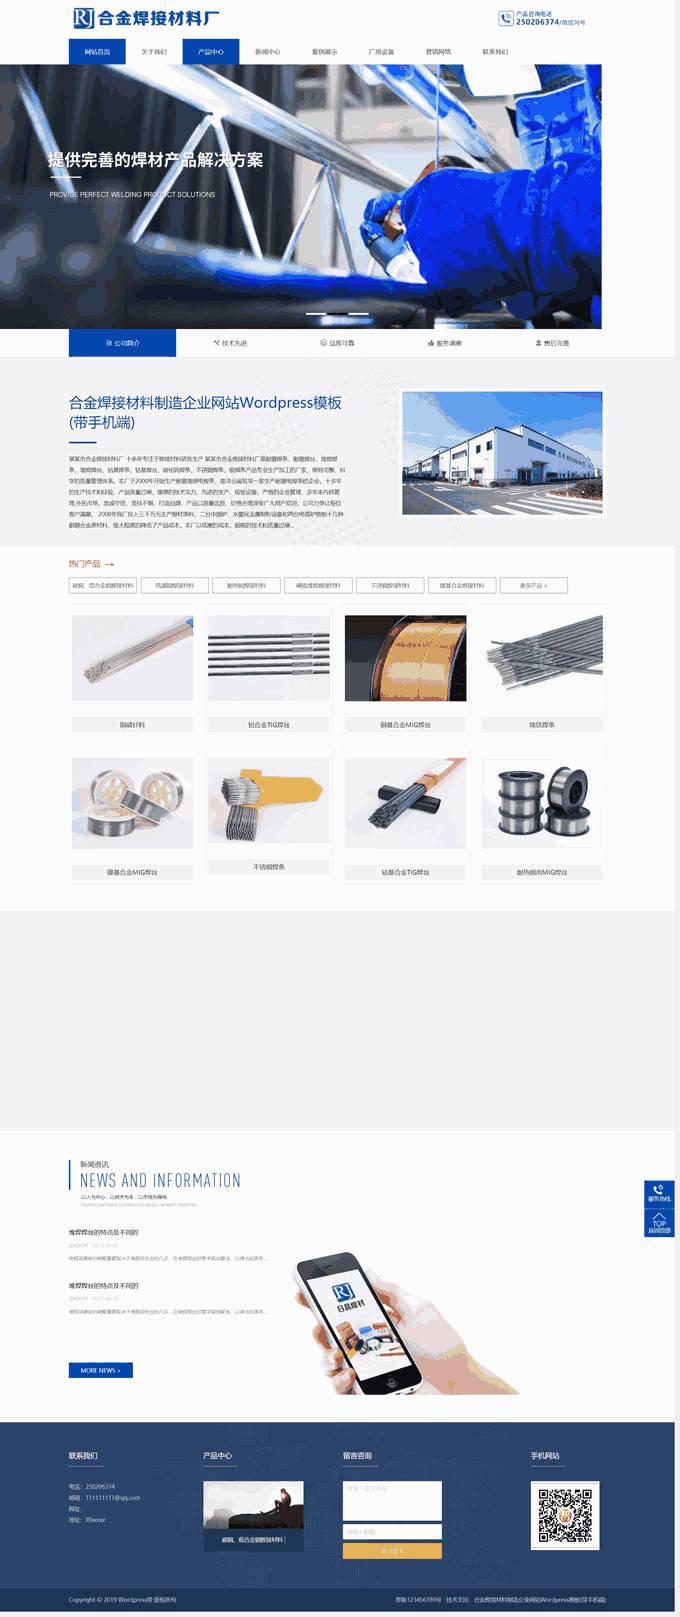 合金焊接材料制造企业网站Wordpress模板主题效果图